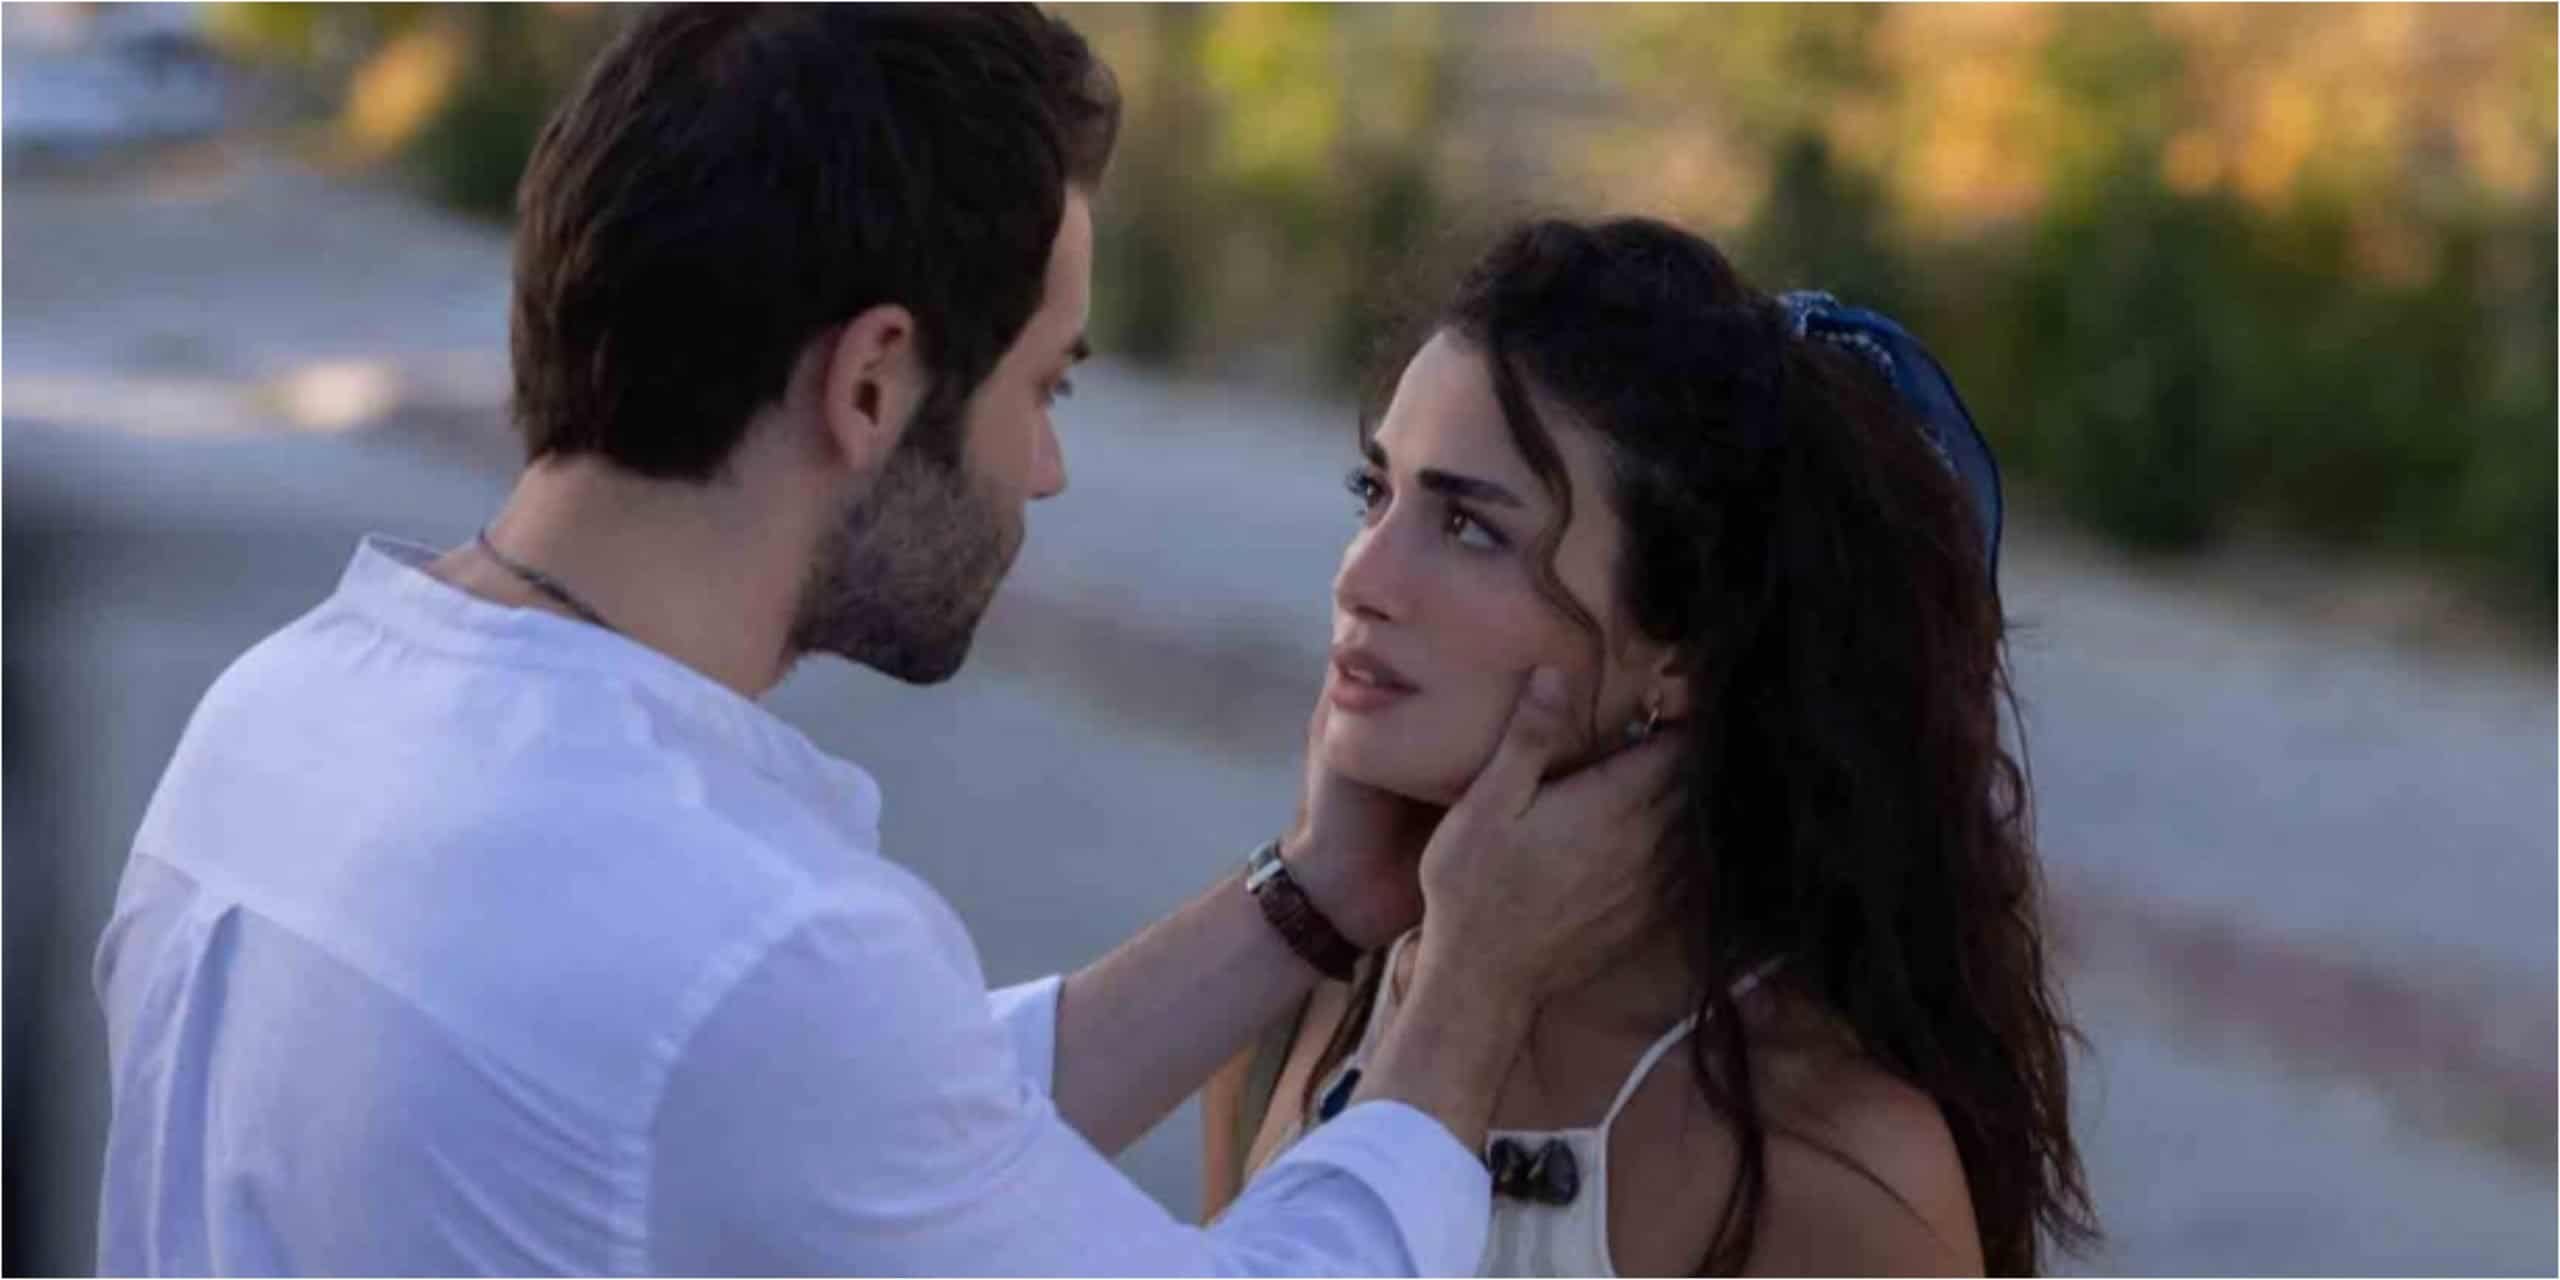 Turkish Romance Drama Safir Episode 3 Synopsis